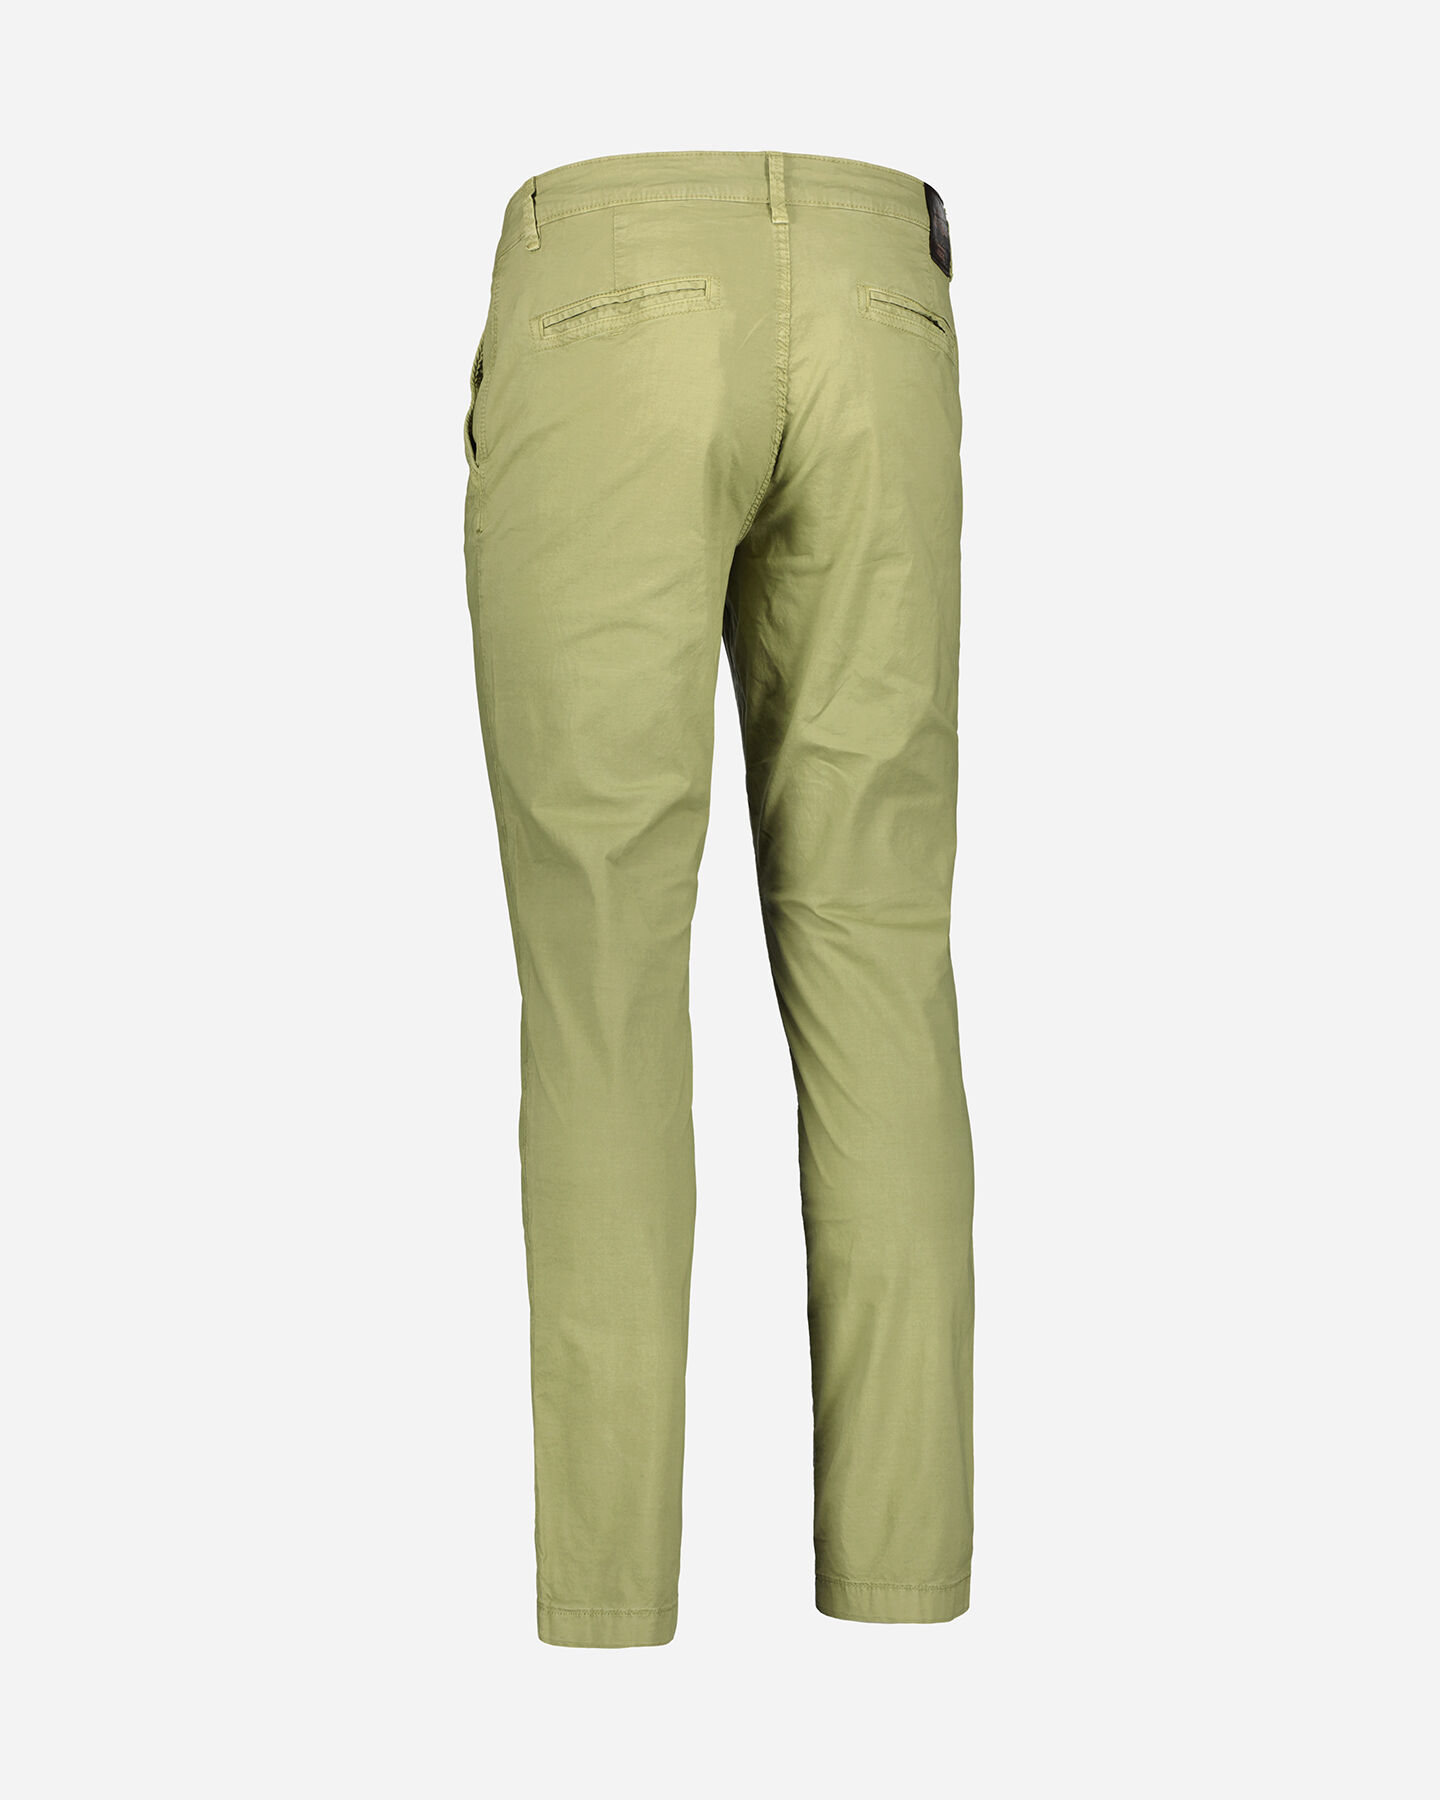  Pantalone COTTON BELT CHINO M S4115866|751|30 scatto 2